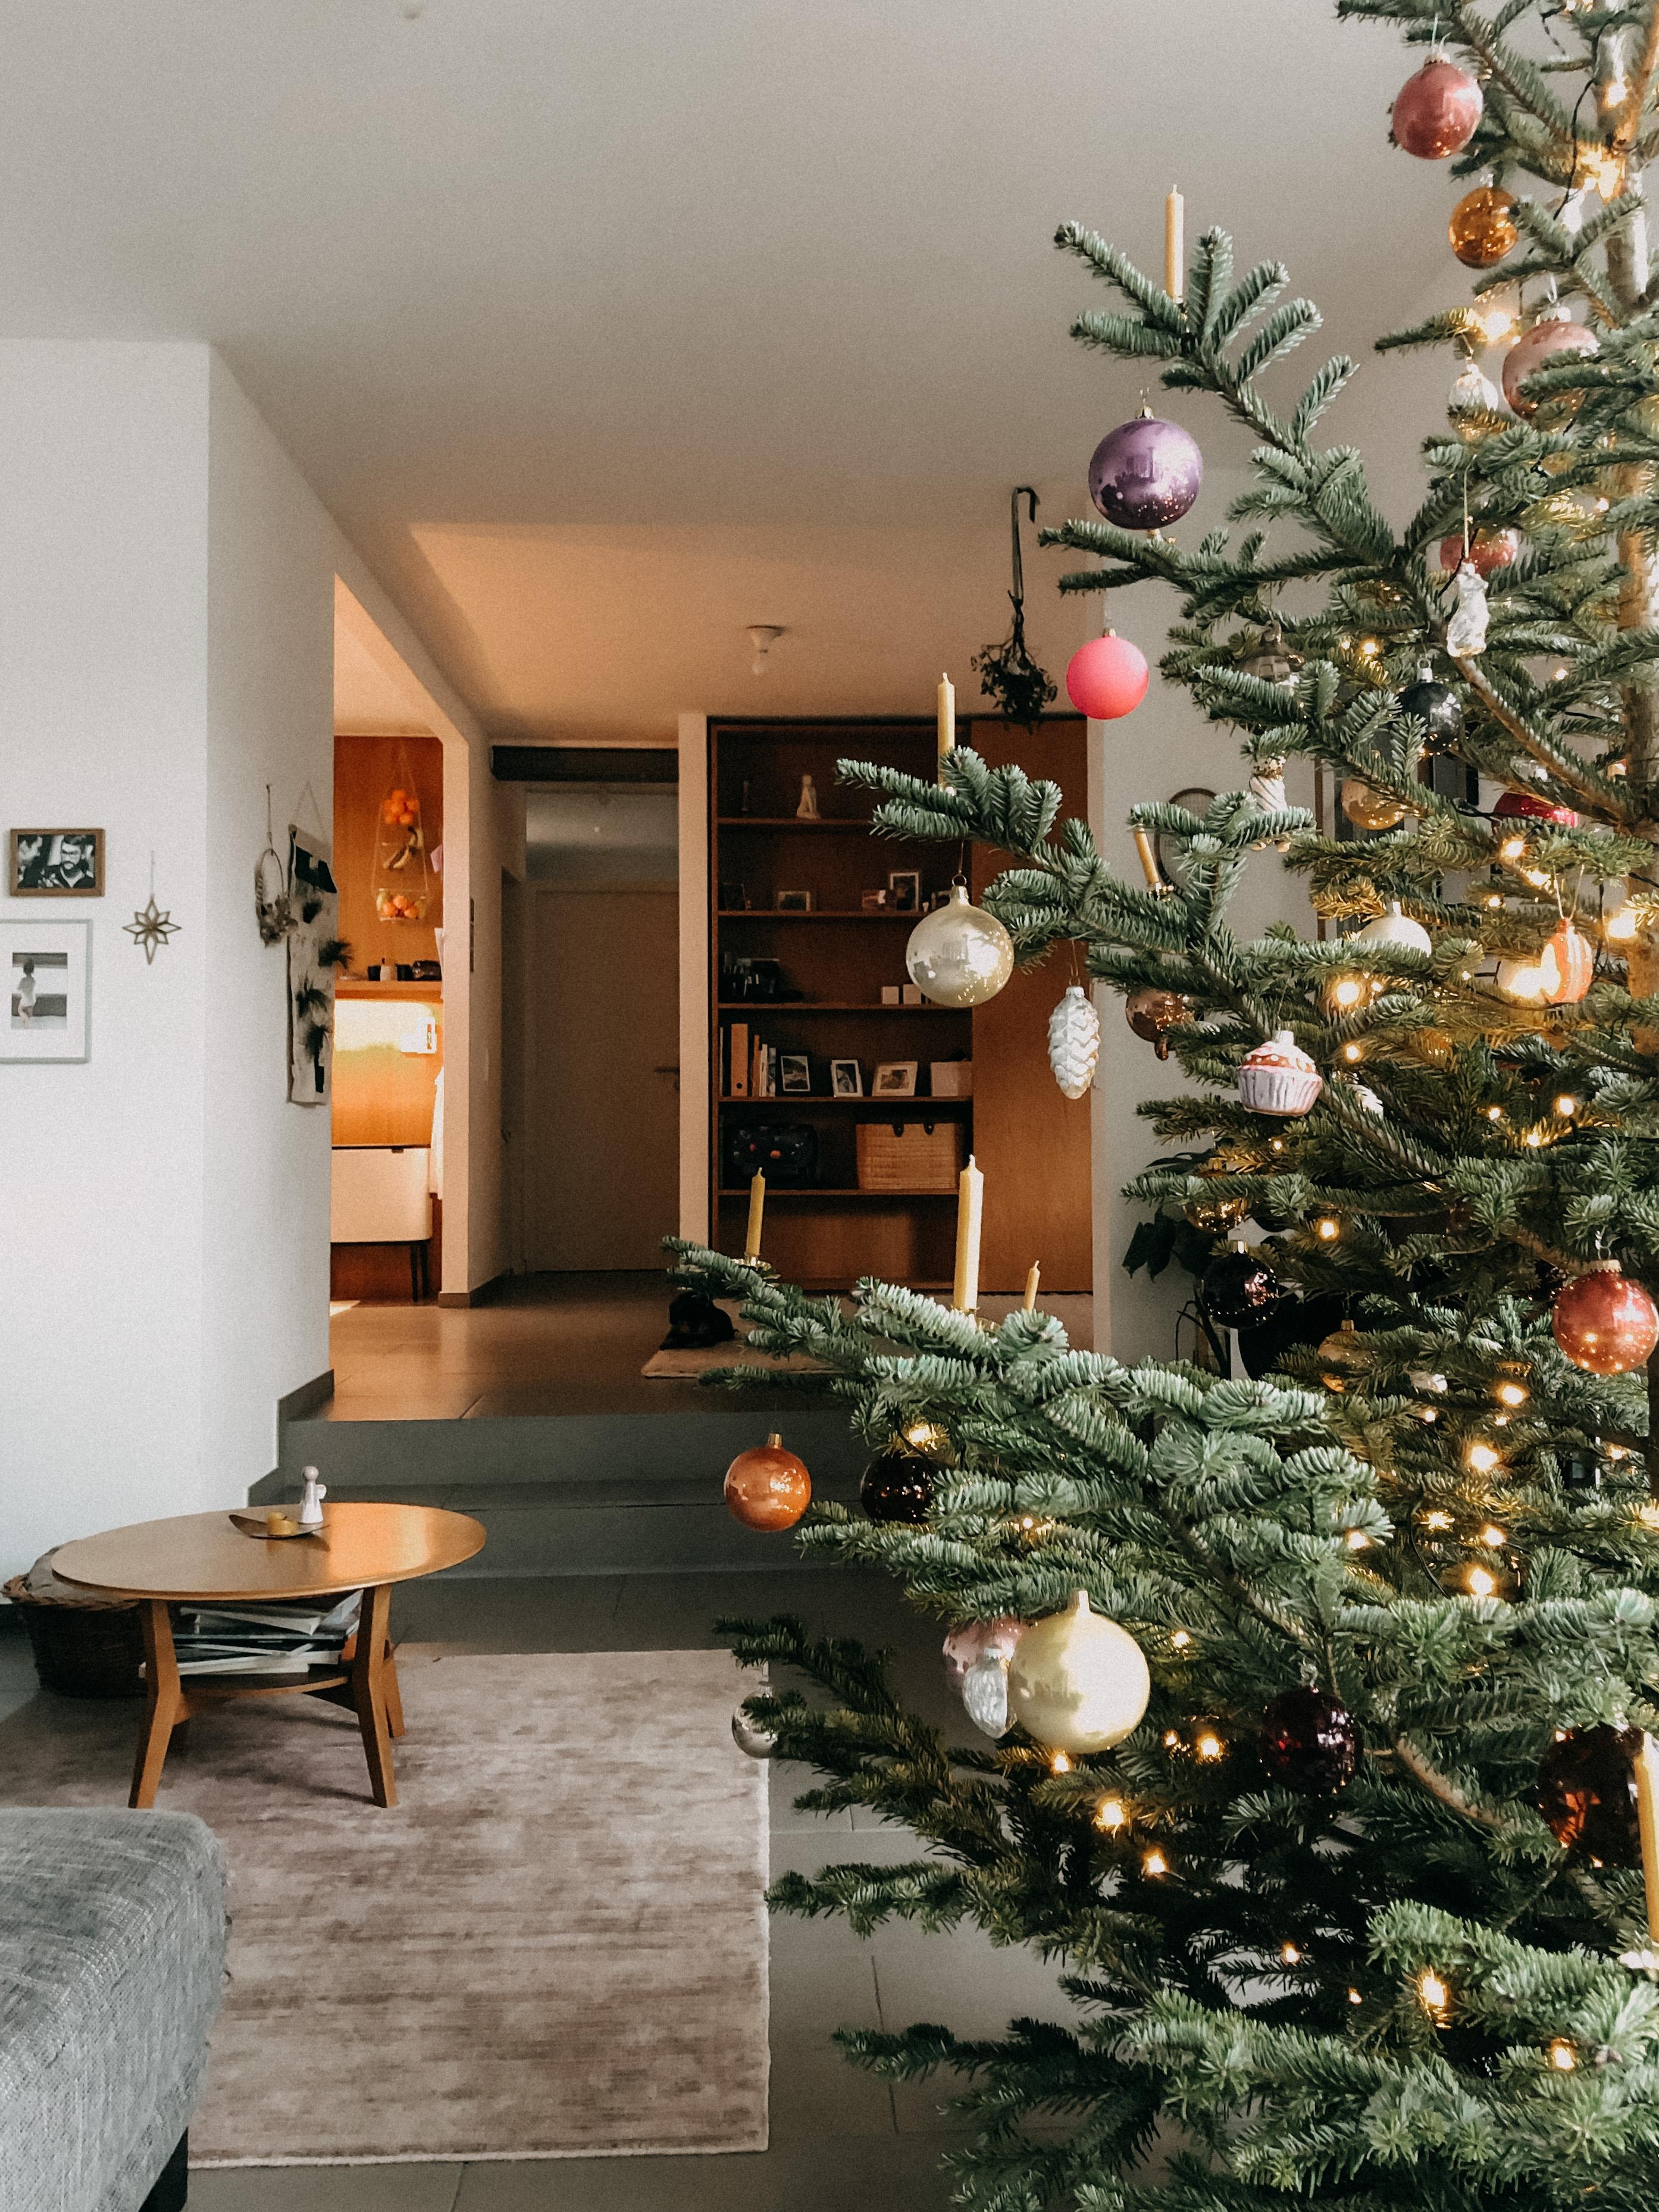 #weihnachtsbaum #weihnachten #merryxmas #livingroom #wohnzimmer #christmaslights #cozy #love